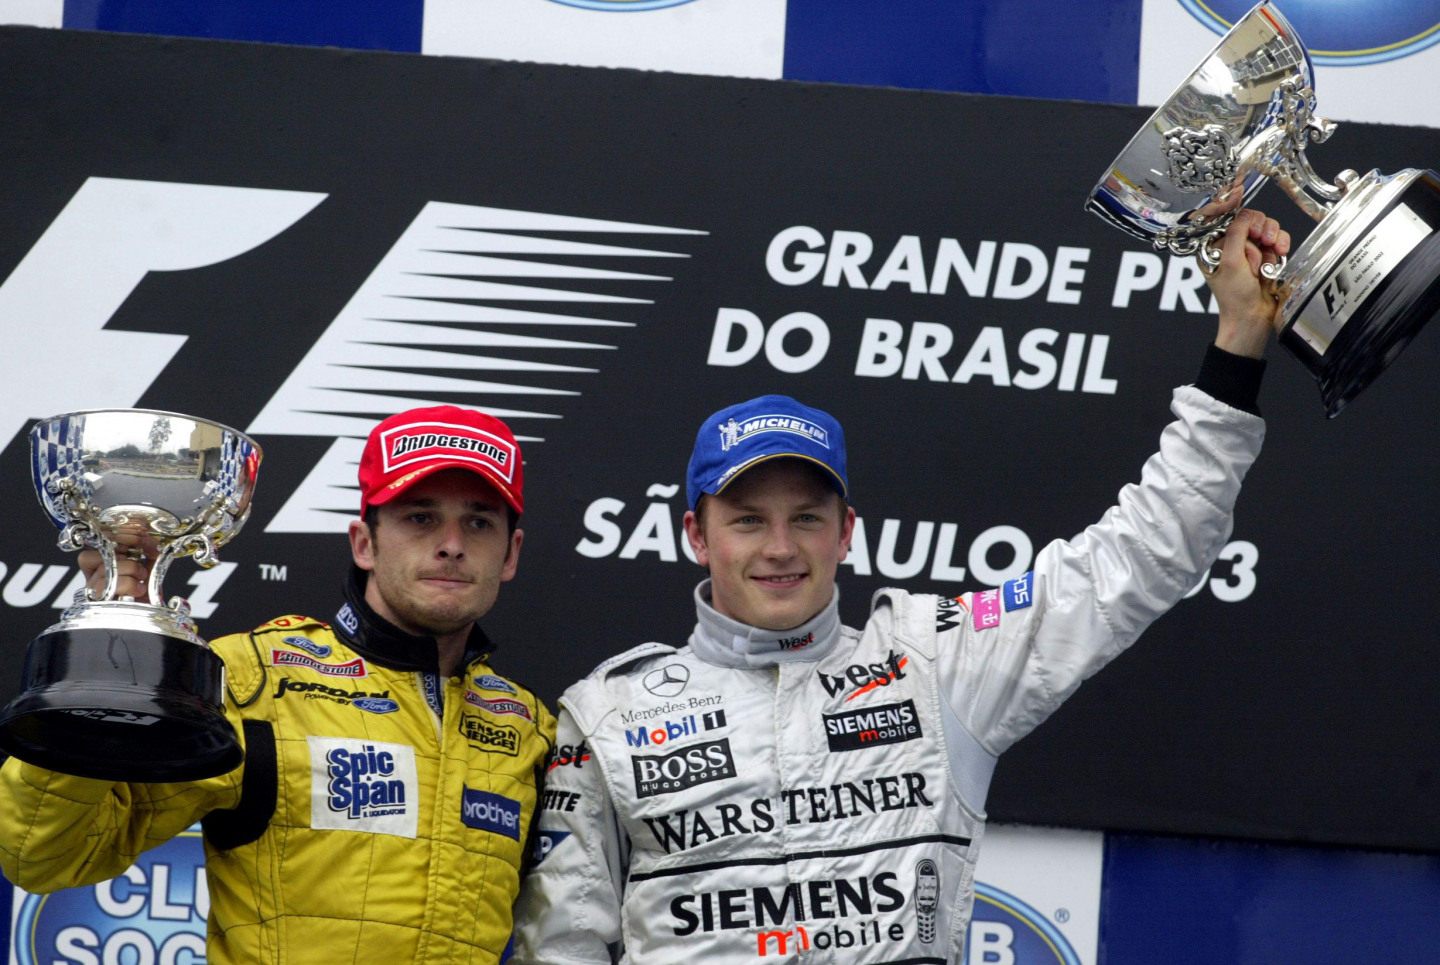 Подиум Гран При Бразилии-2003. Третий призер Фернандо Алонсо в награждении не участвовал, так как находился на медицинском обследовании © F1